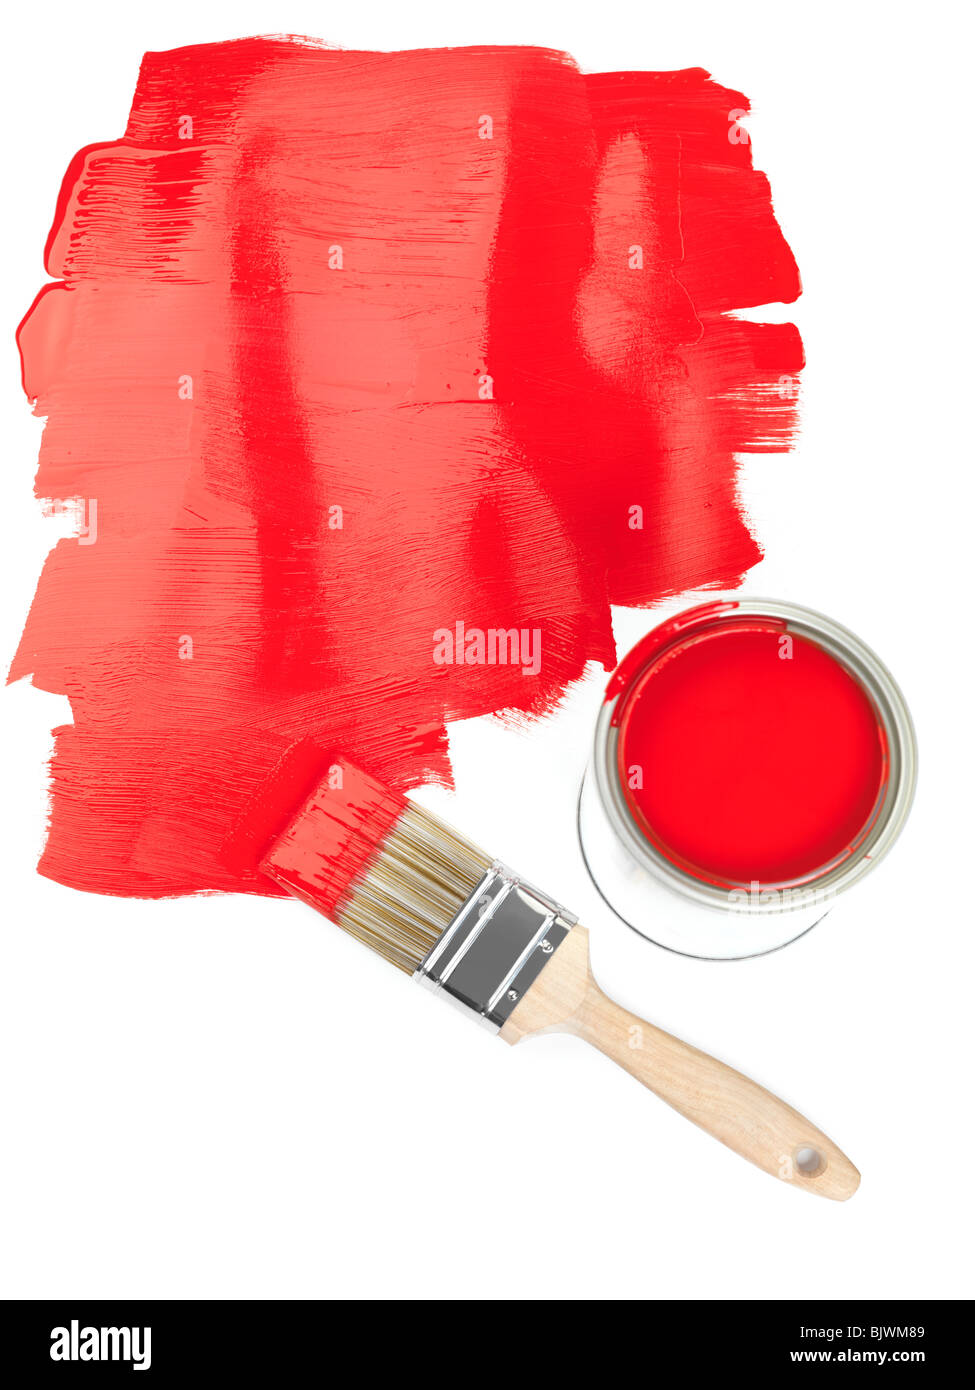 La vernice rossa copyspace e un pennello con una latta di vernice su sfondo bianco Foto Stock